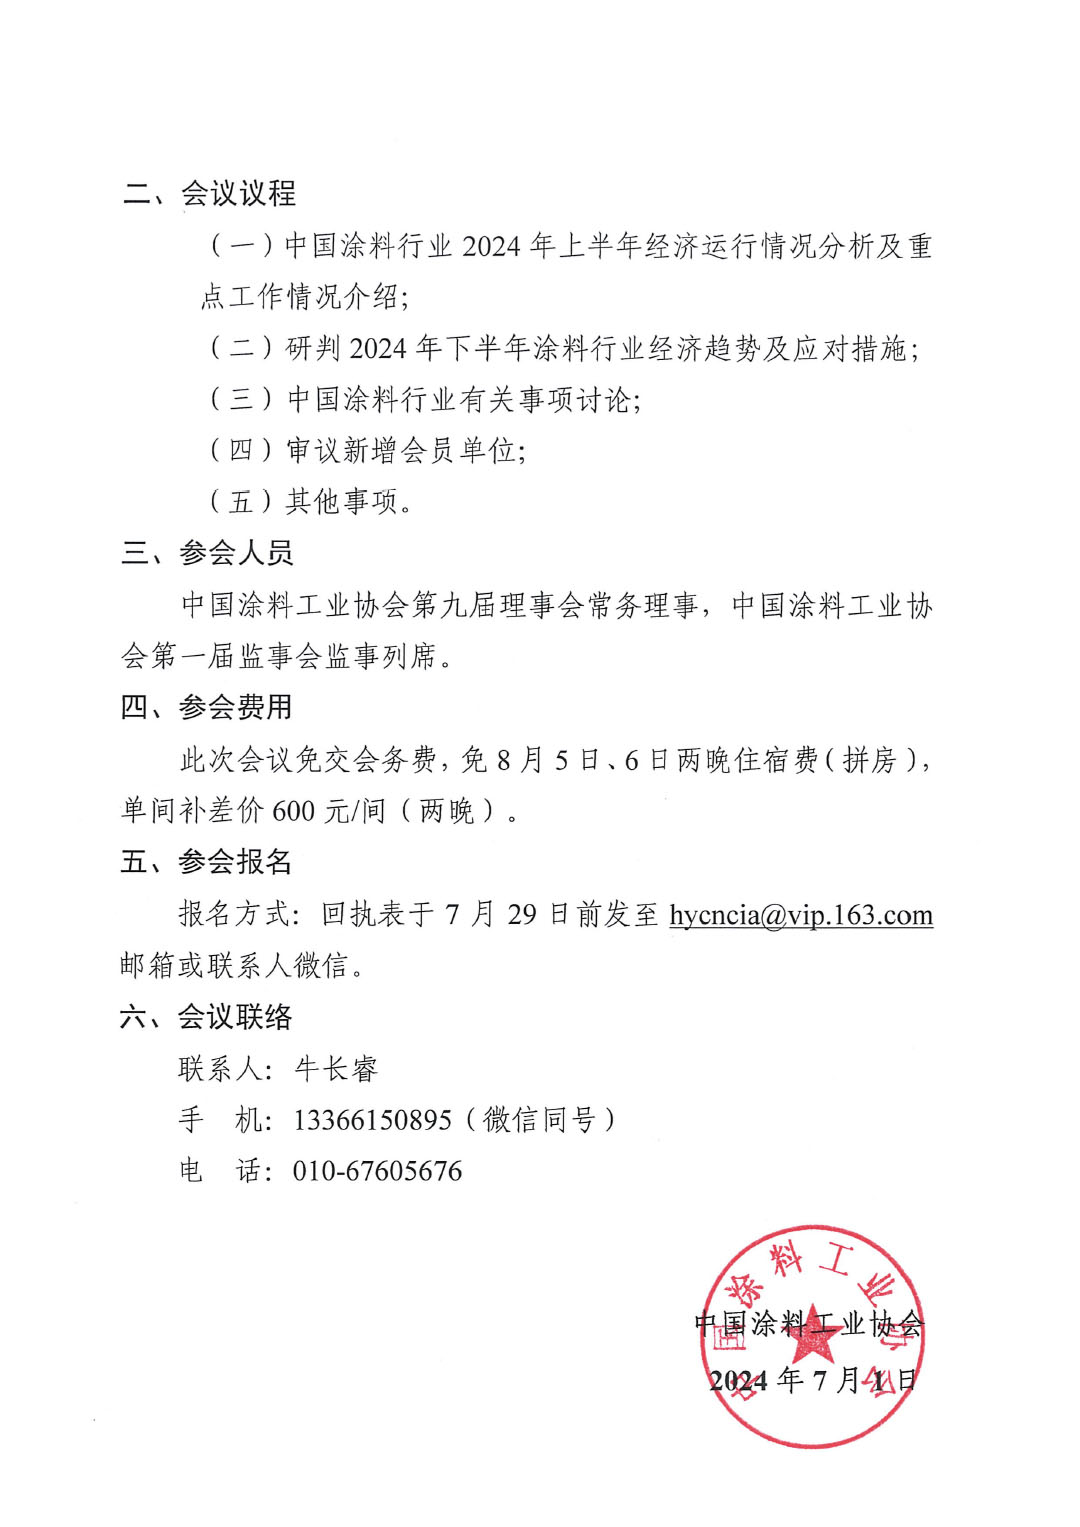 关于召开中国涂料工业协会第九届四次常务理事会的通知-2